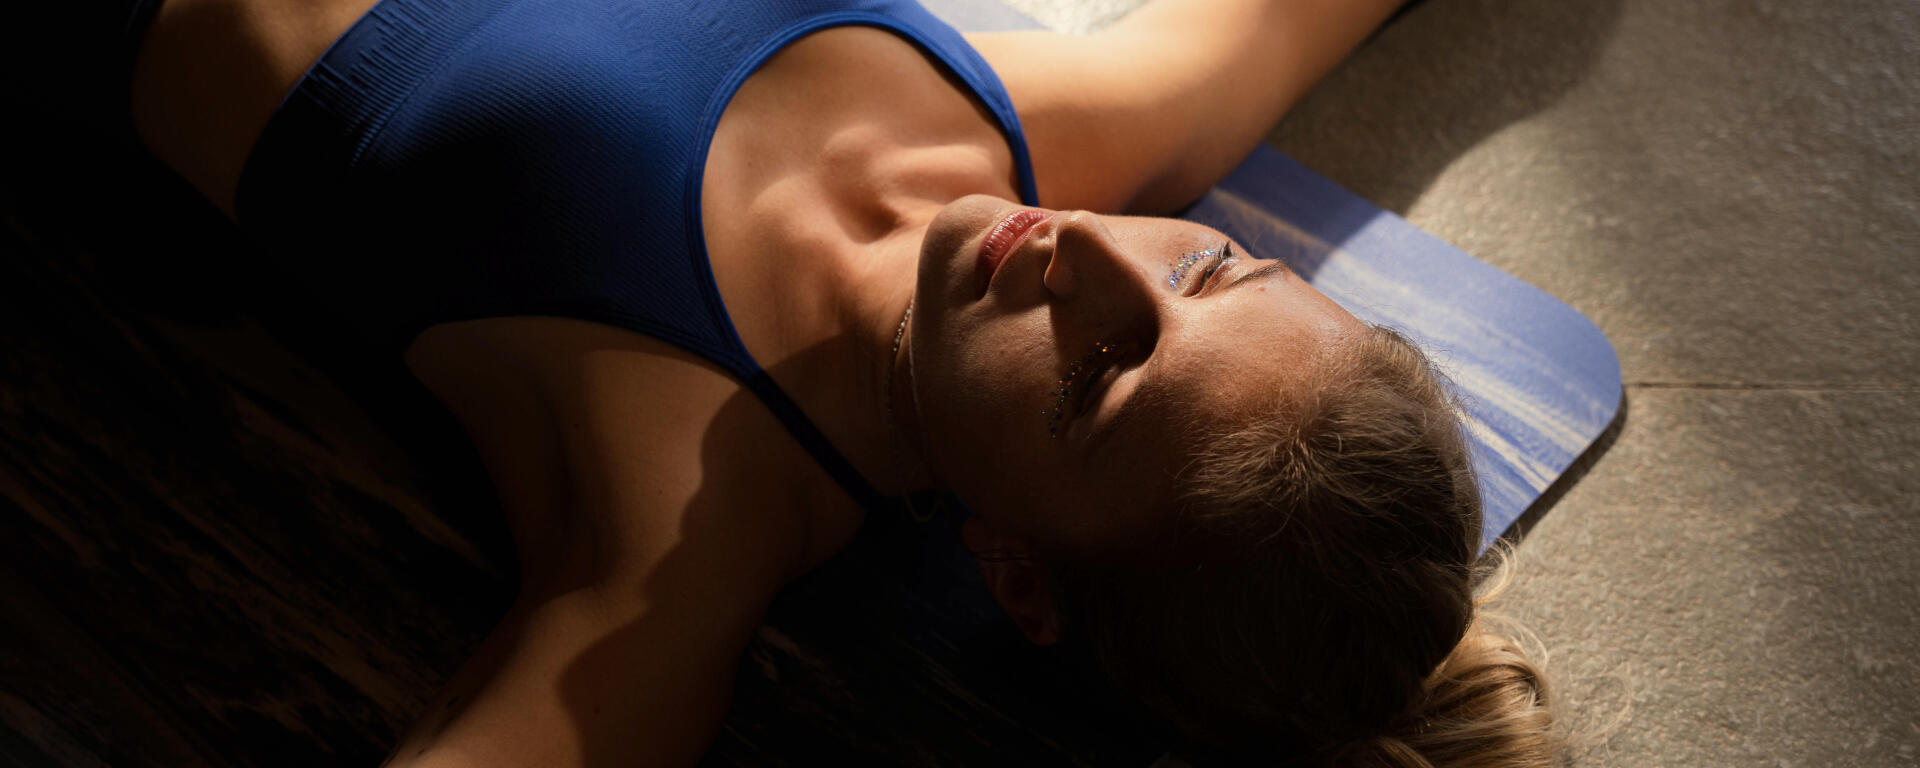 Poses de yoga: descubre sus nombres y posiciones | Decathlon